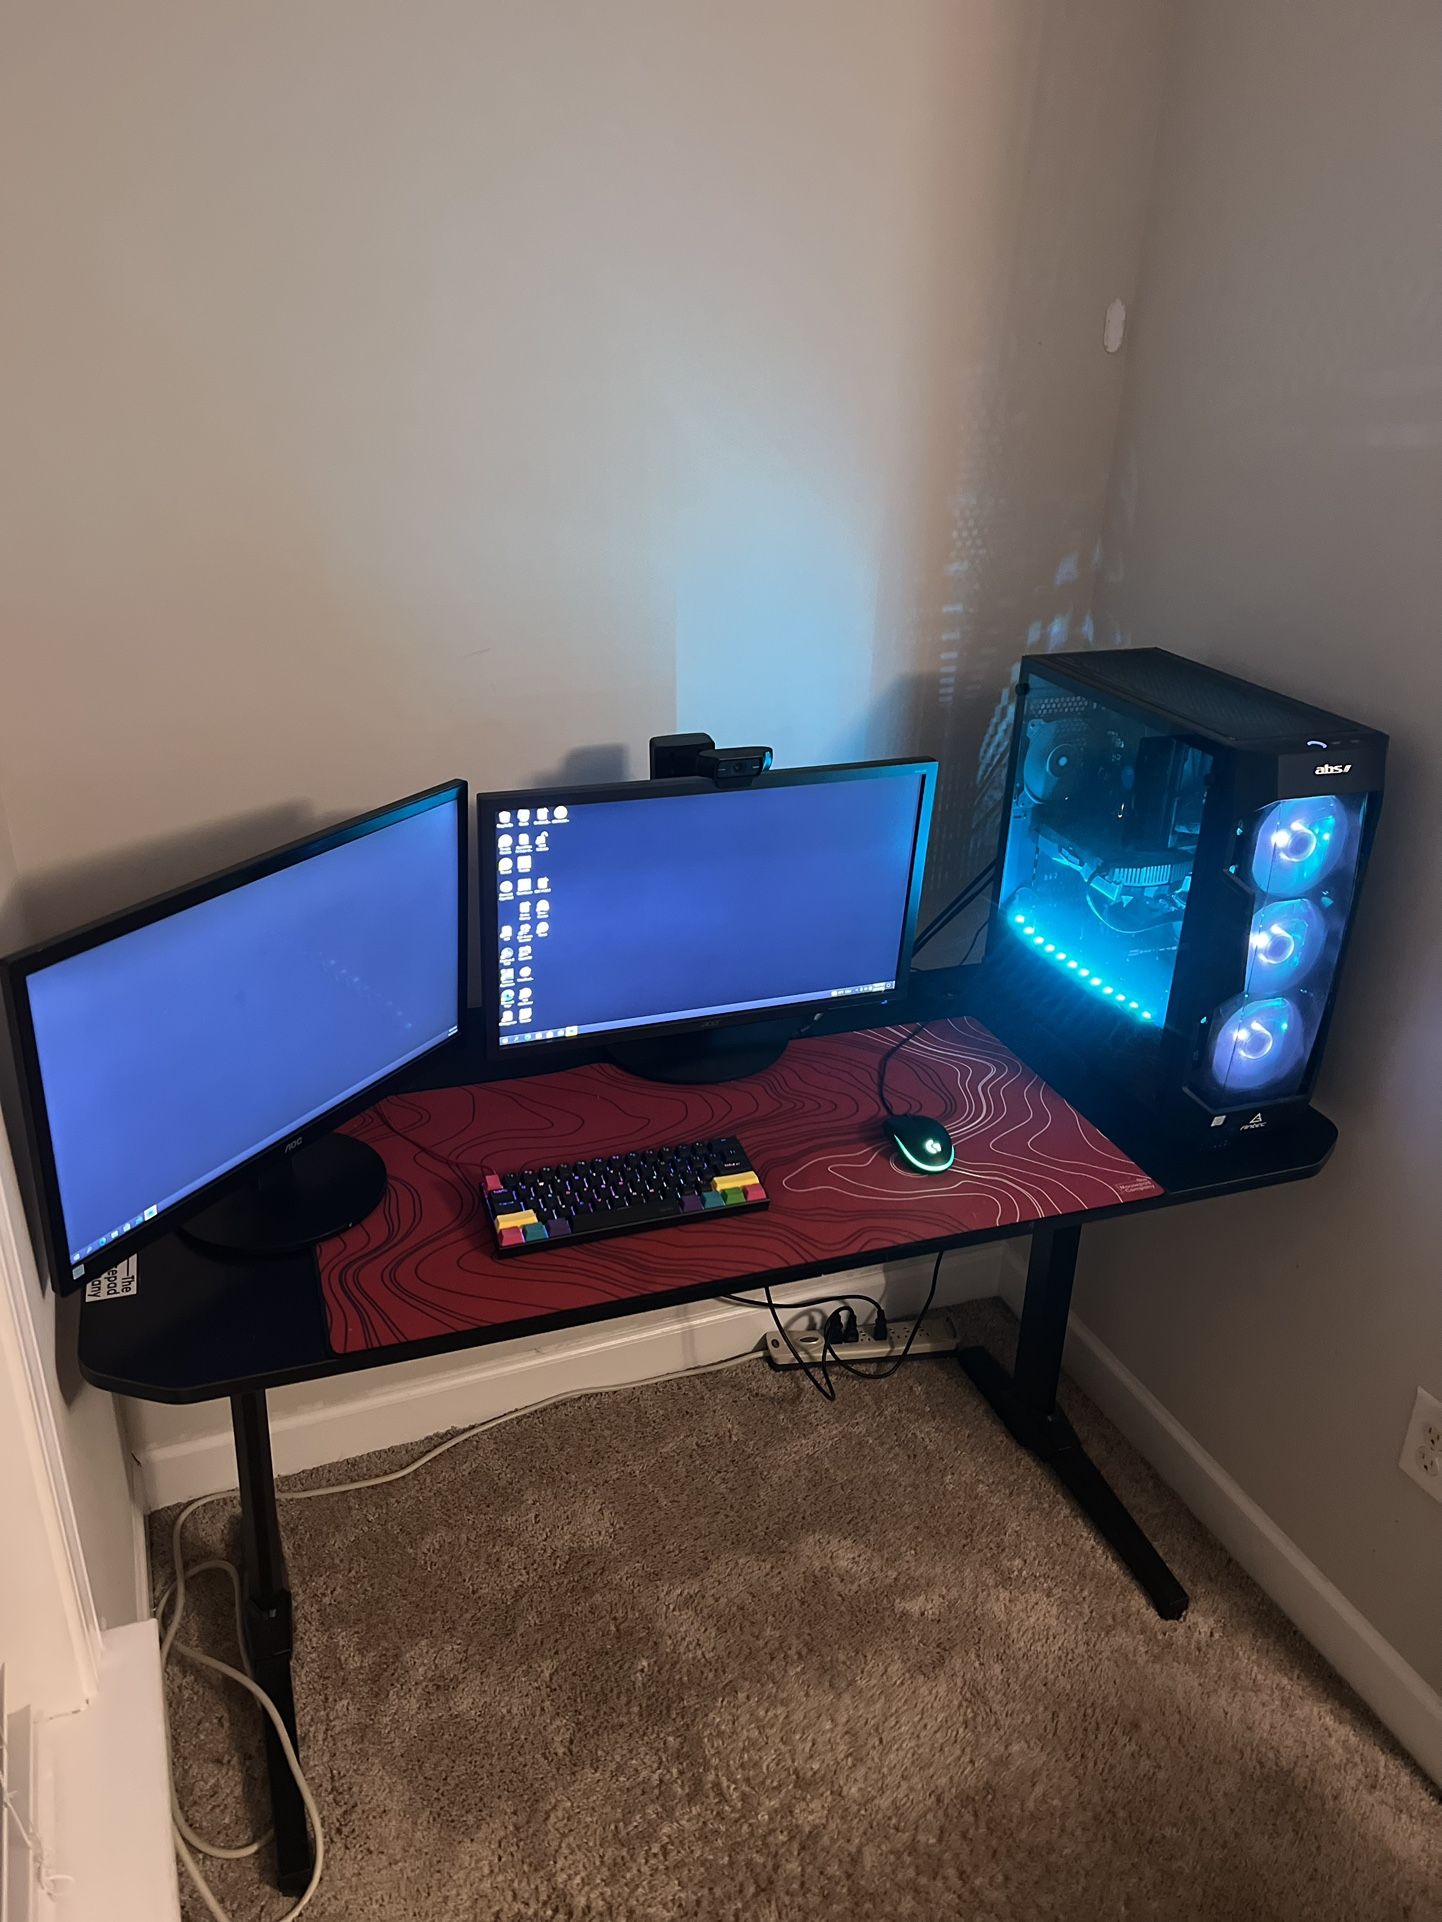 Gaming/Streaming PC + Dual Monitor Computer Setup